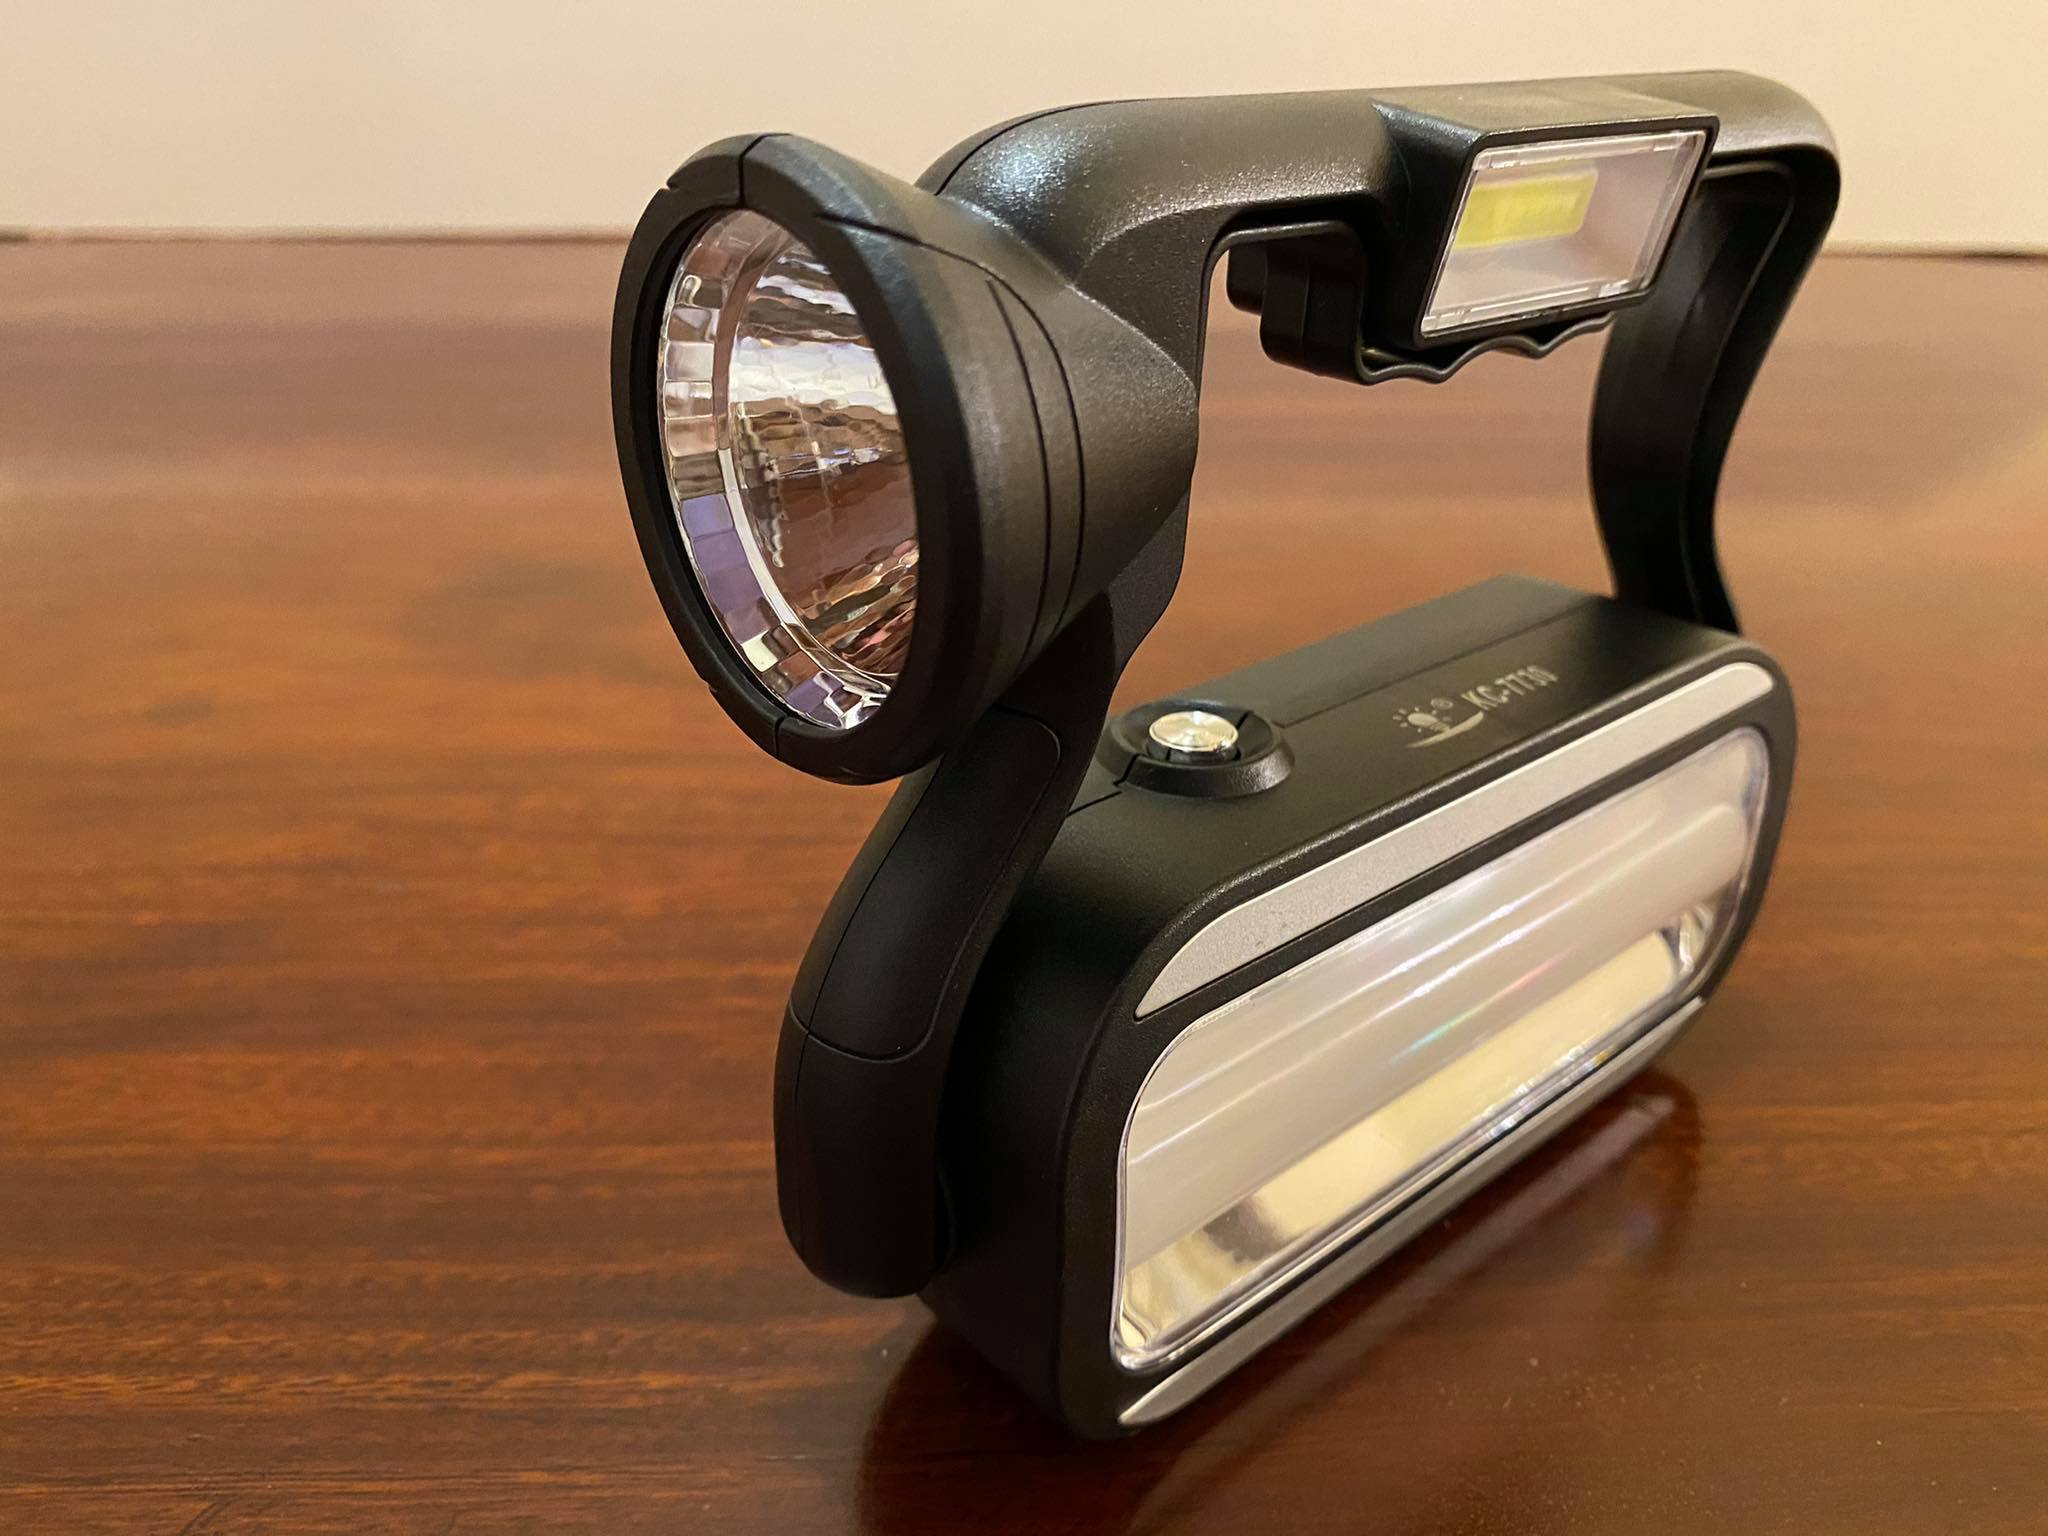 Đèn pin sạc xách tay 4 in 1 (đèn pin, đèn dự phòng cúp điện, đèn rọi xa, sạc khẩn cấp cho điện thoại), có thể sạc bằng điện hoặc sạc bằng năng lượng mặt trời, có móc treo tiện lợi